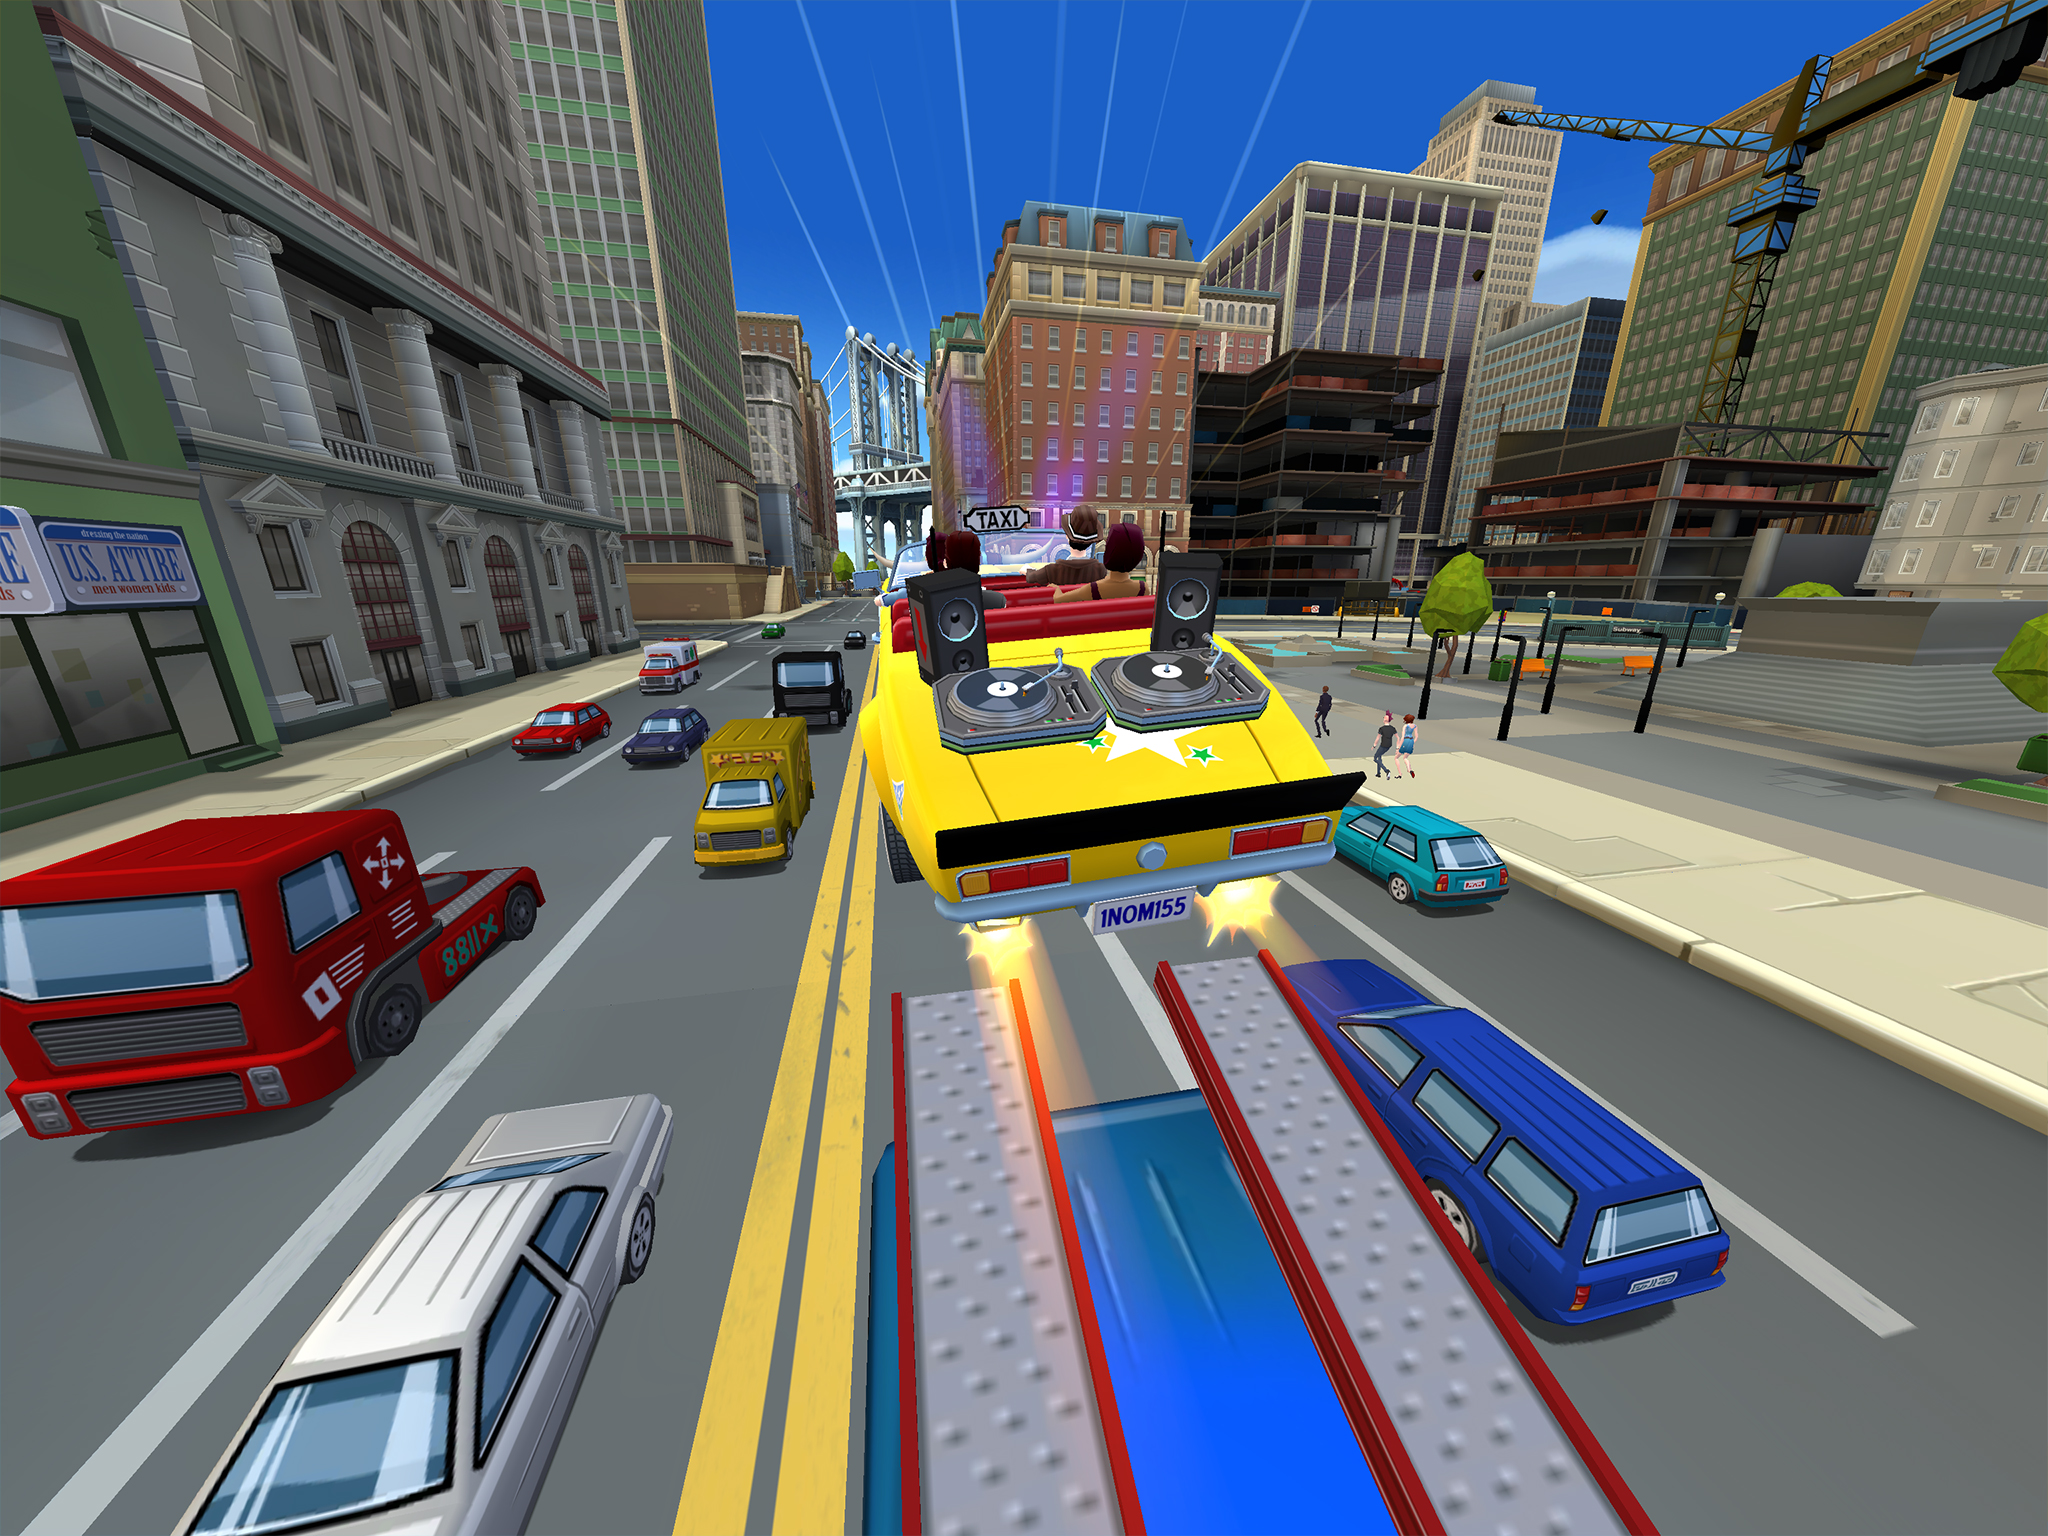 Mobil cihazlar için yeni bir Crazy Taxi oyunu geliyor